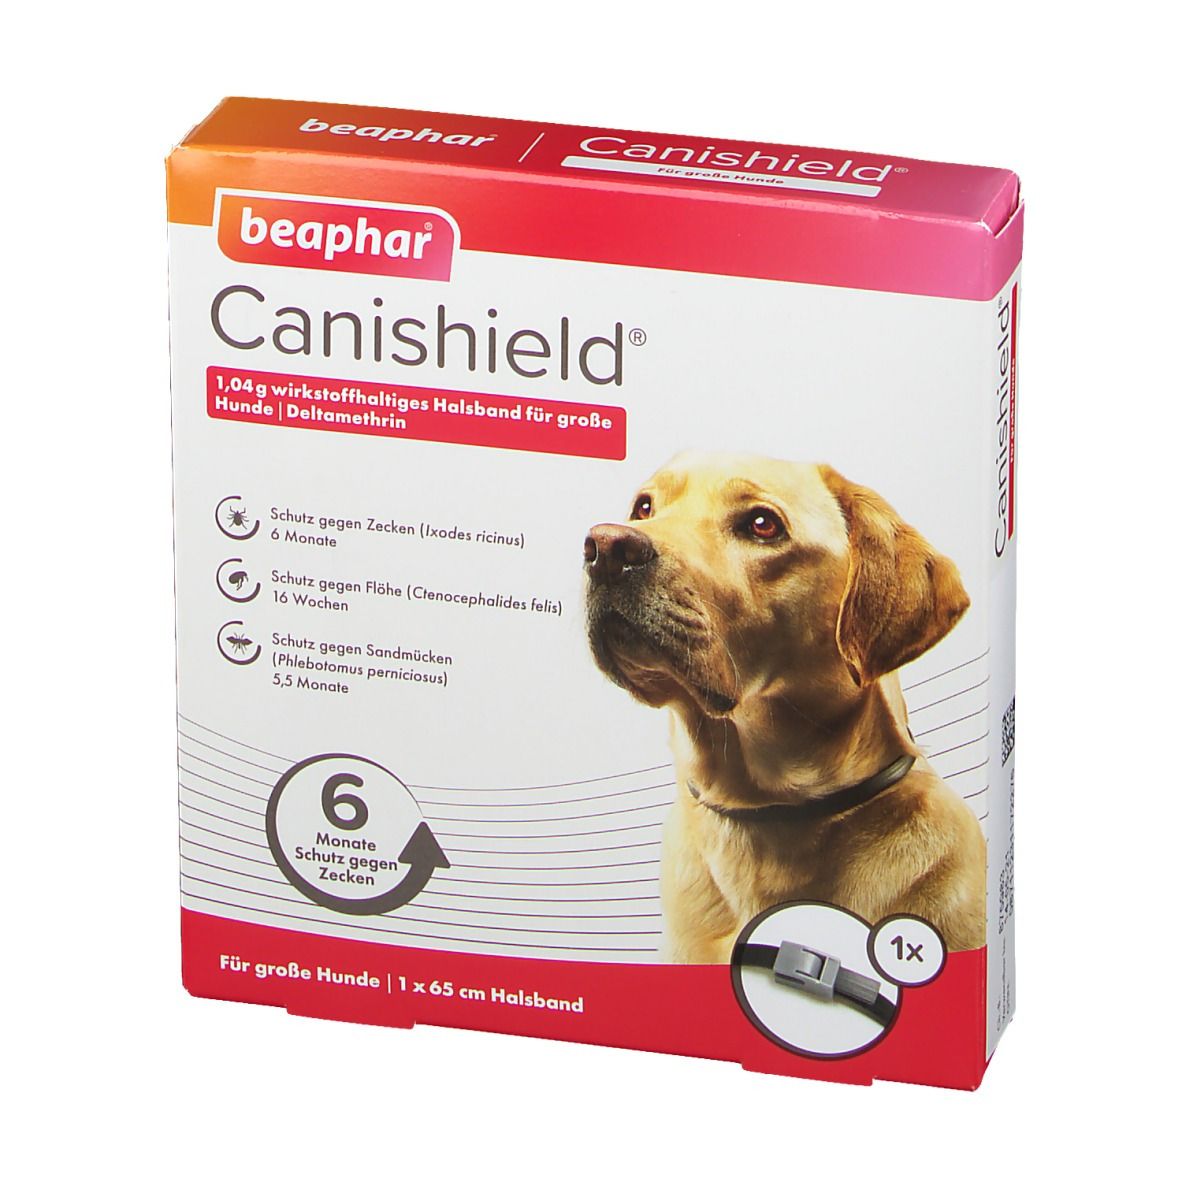 Canishield® 1,04 g wirkstoffhaltiges Halsband für große Hunde